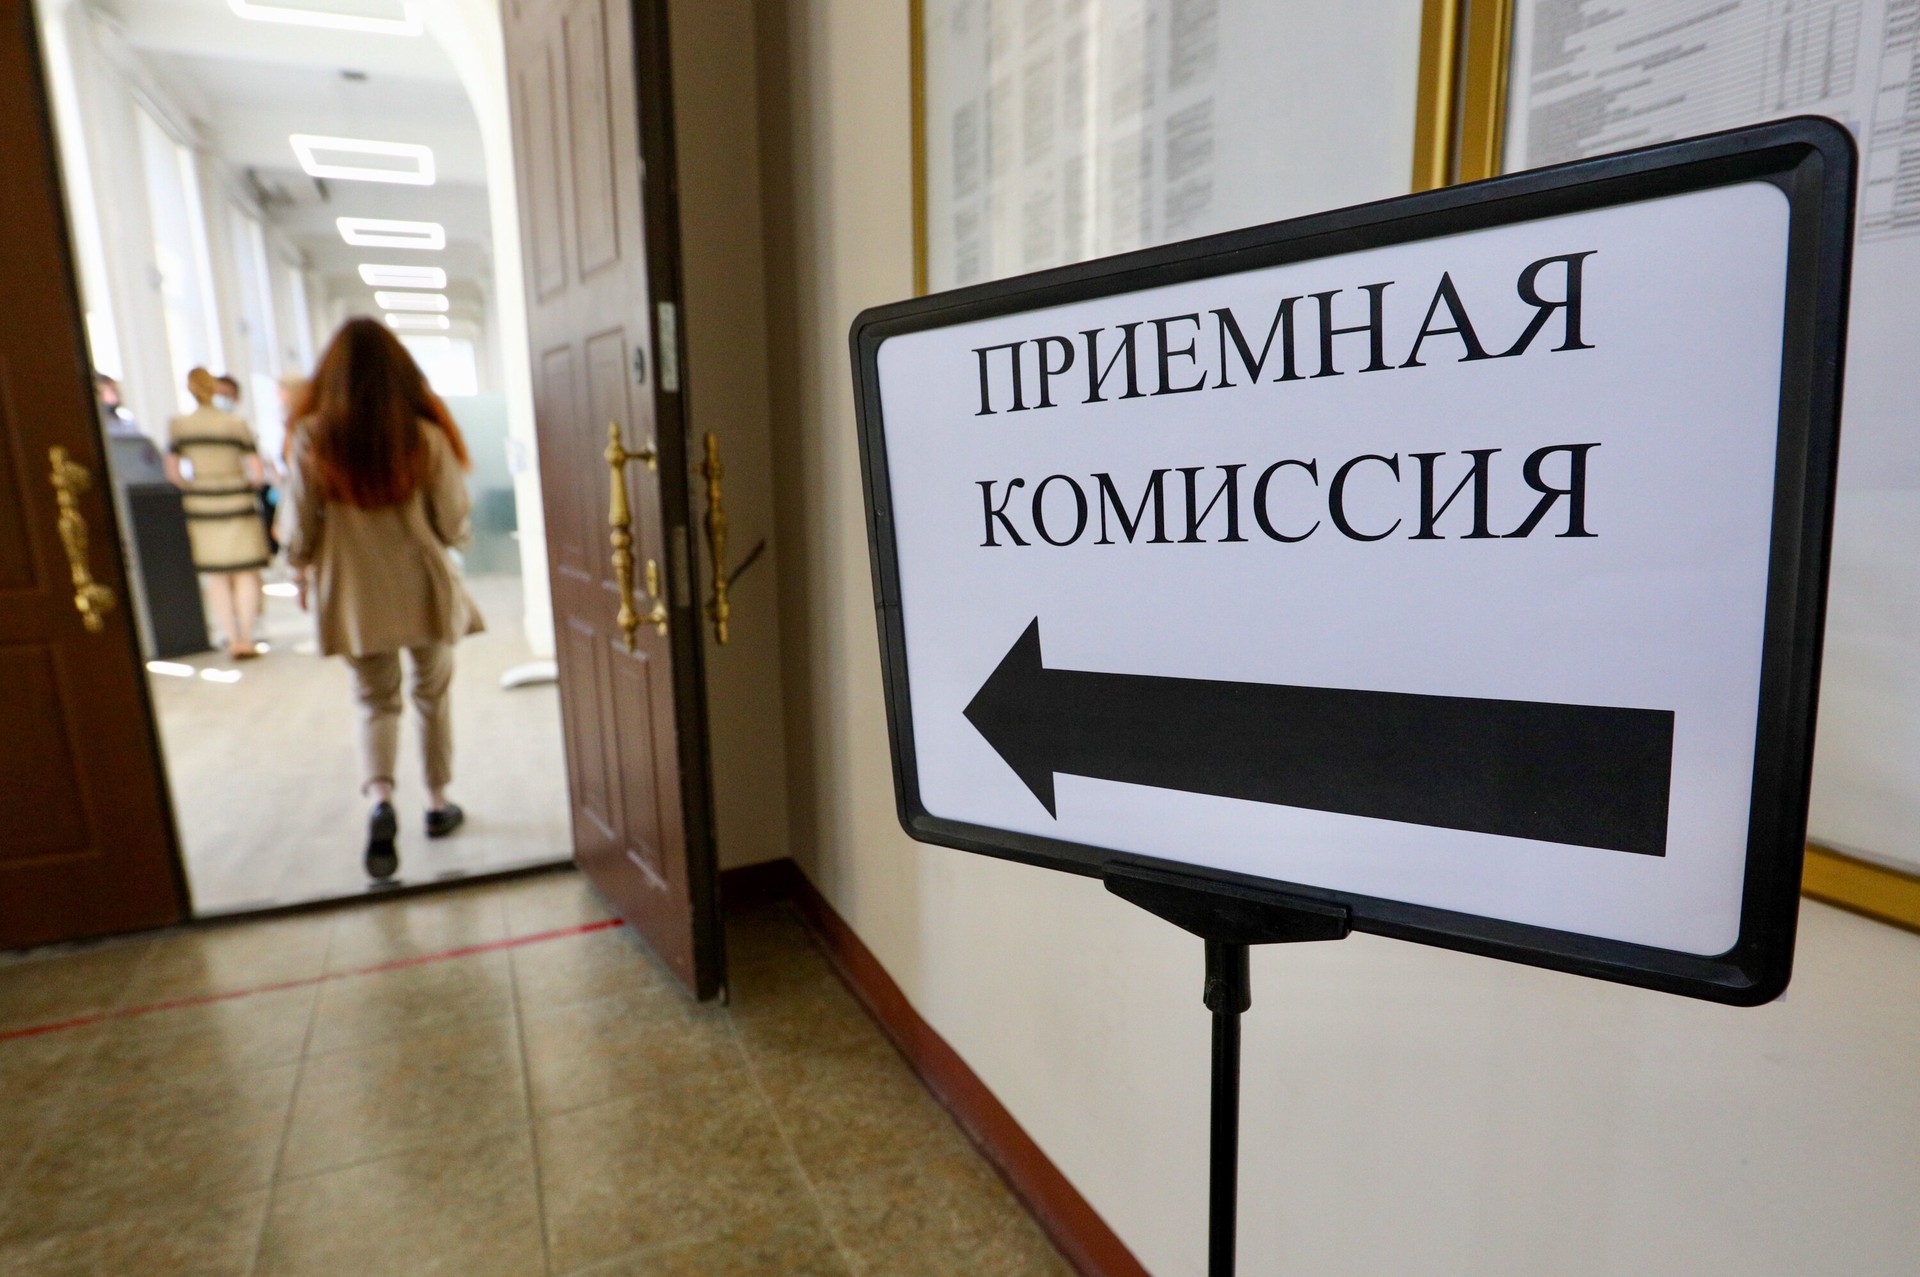 Предложения по новой системе высшего образования в России будут готовы к лету